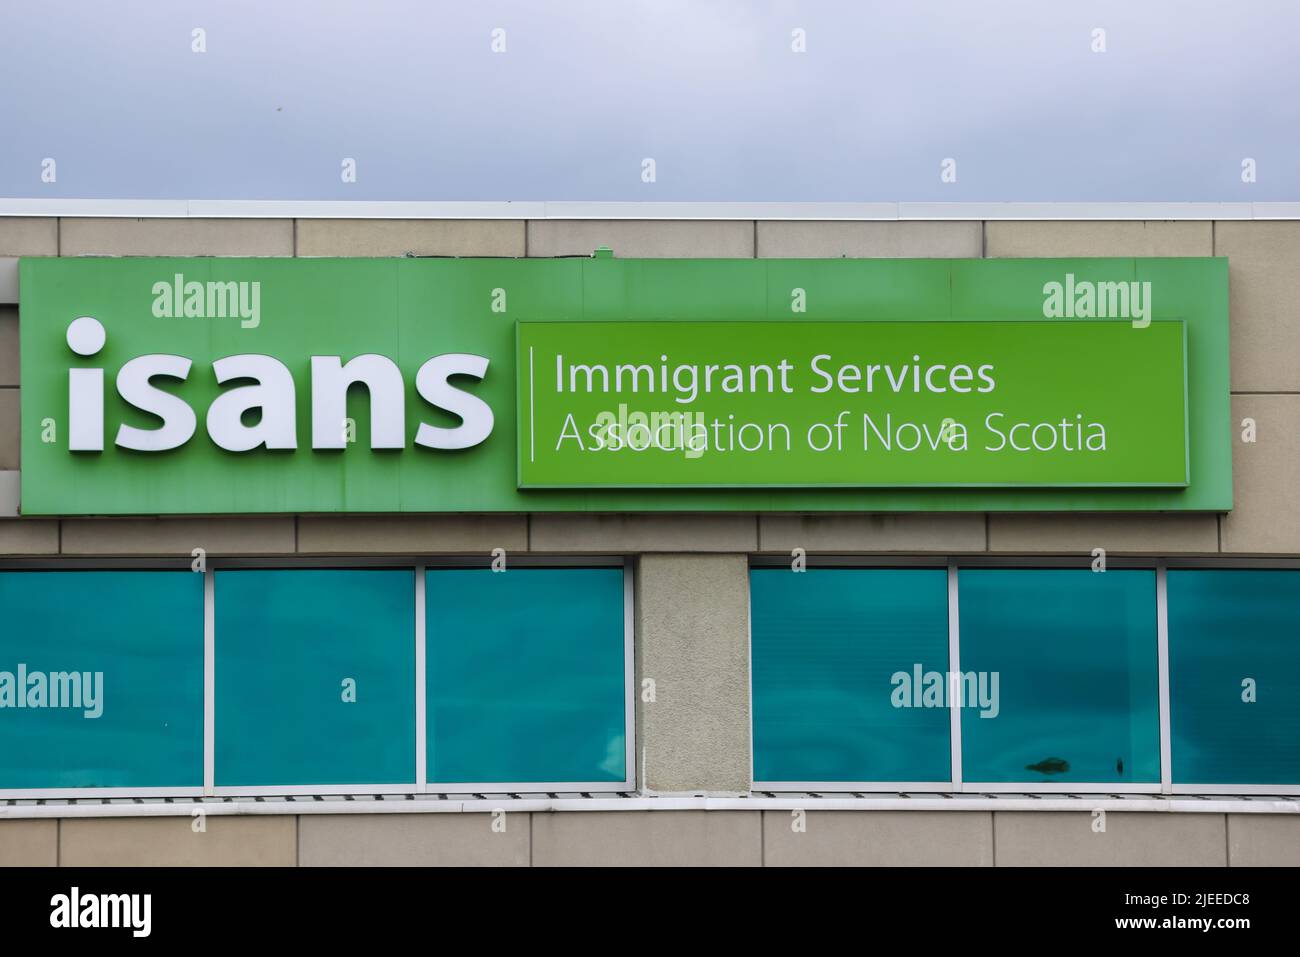 ISANS Office, Mumford, HALIFAX, KANADA - Immigration Services Association of Nova Scotia bietet Siedlungs- und Integrationsdienstleistungen für Einwanderer. Stockfoto